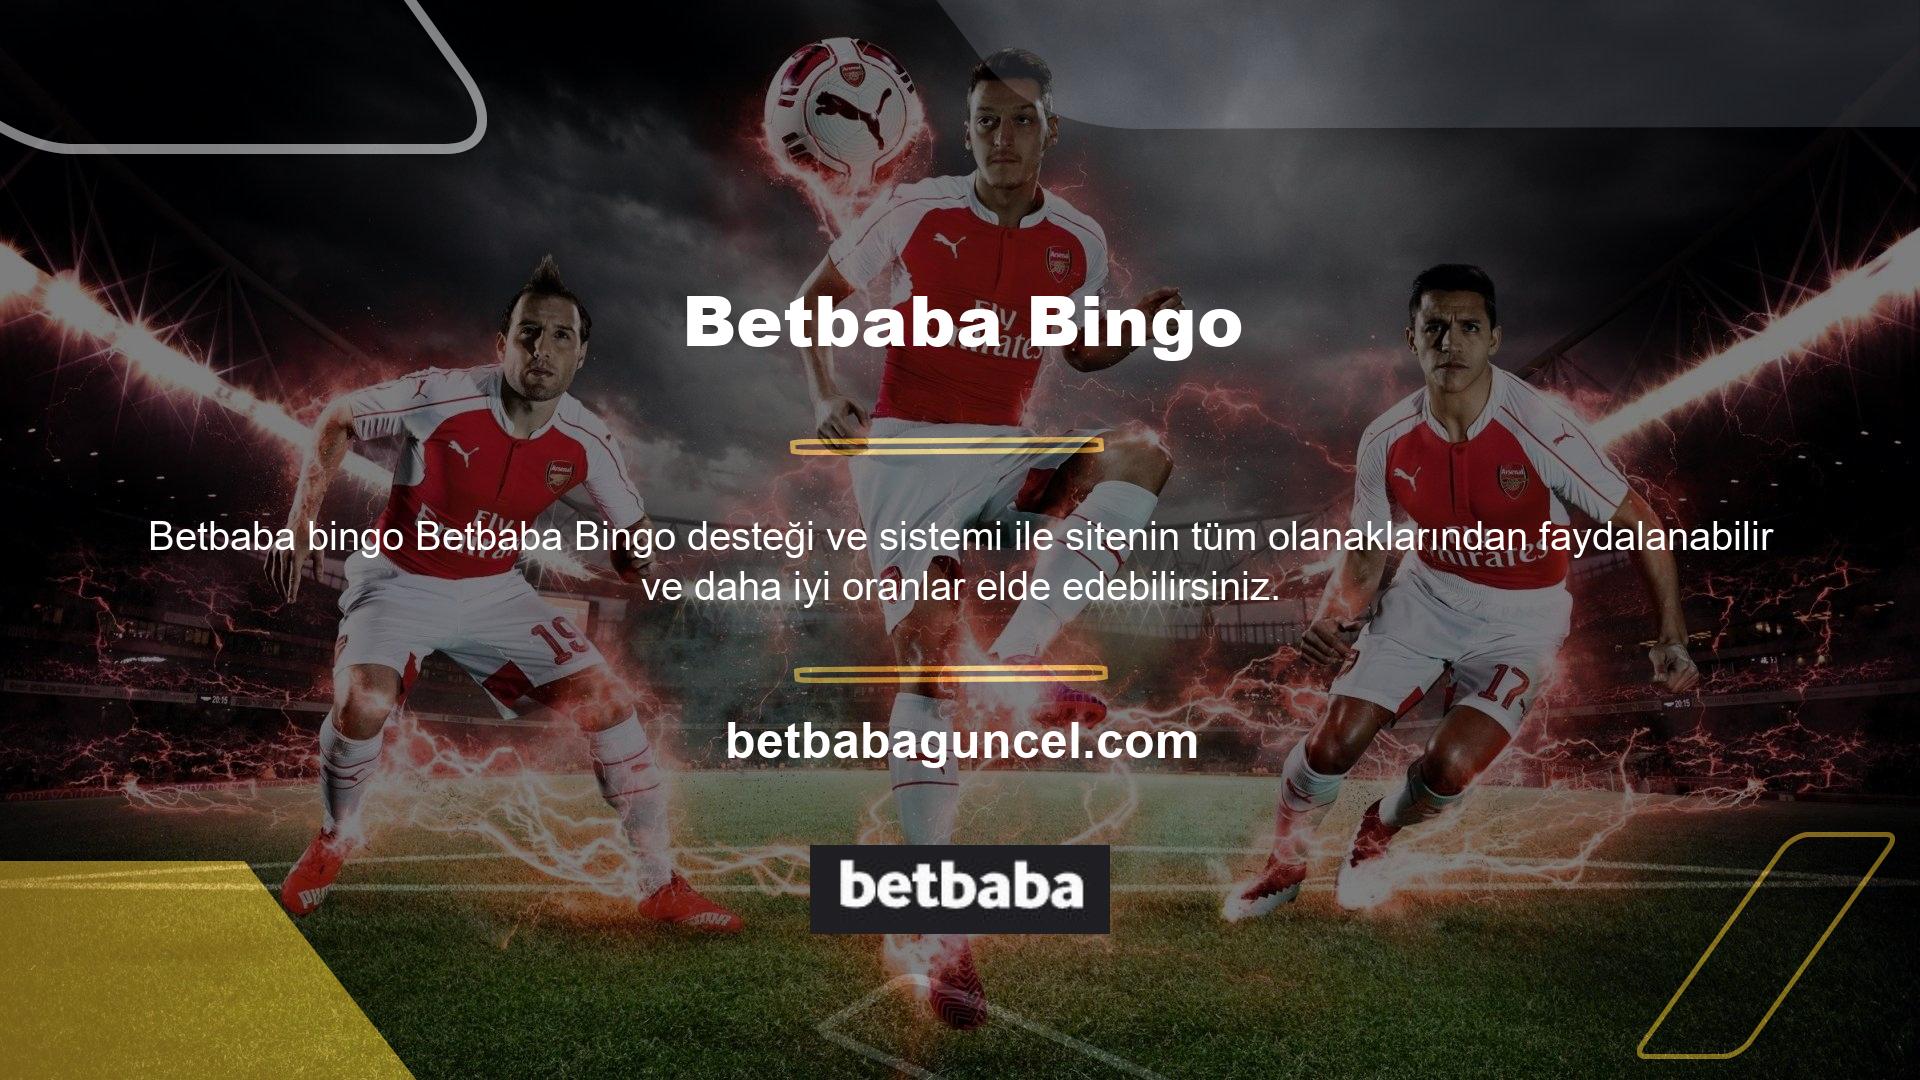 Oyun şablonları söz konusu olduğunda, Betbaba Bingo seçeneği muhtemelen en uygun olanıdır